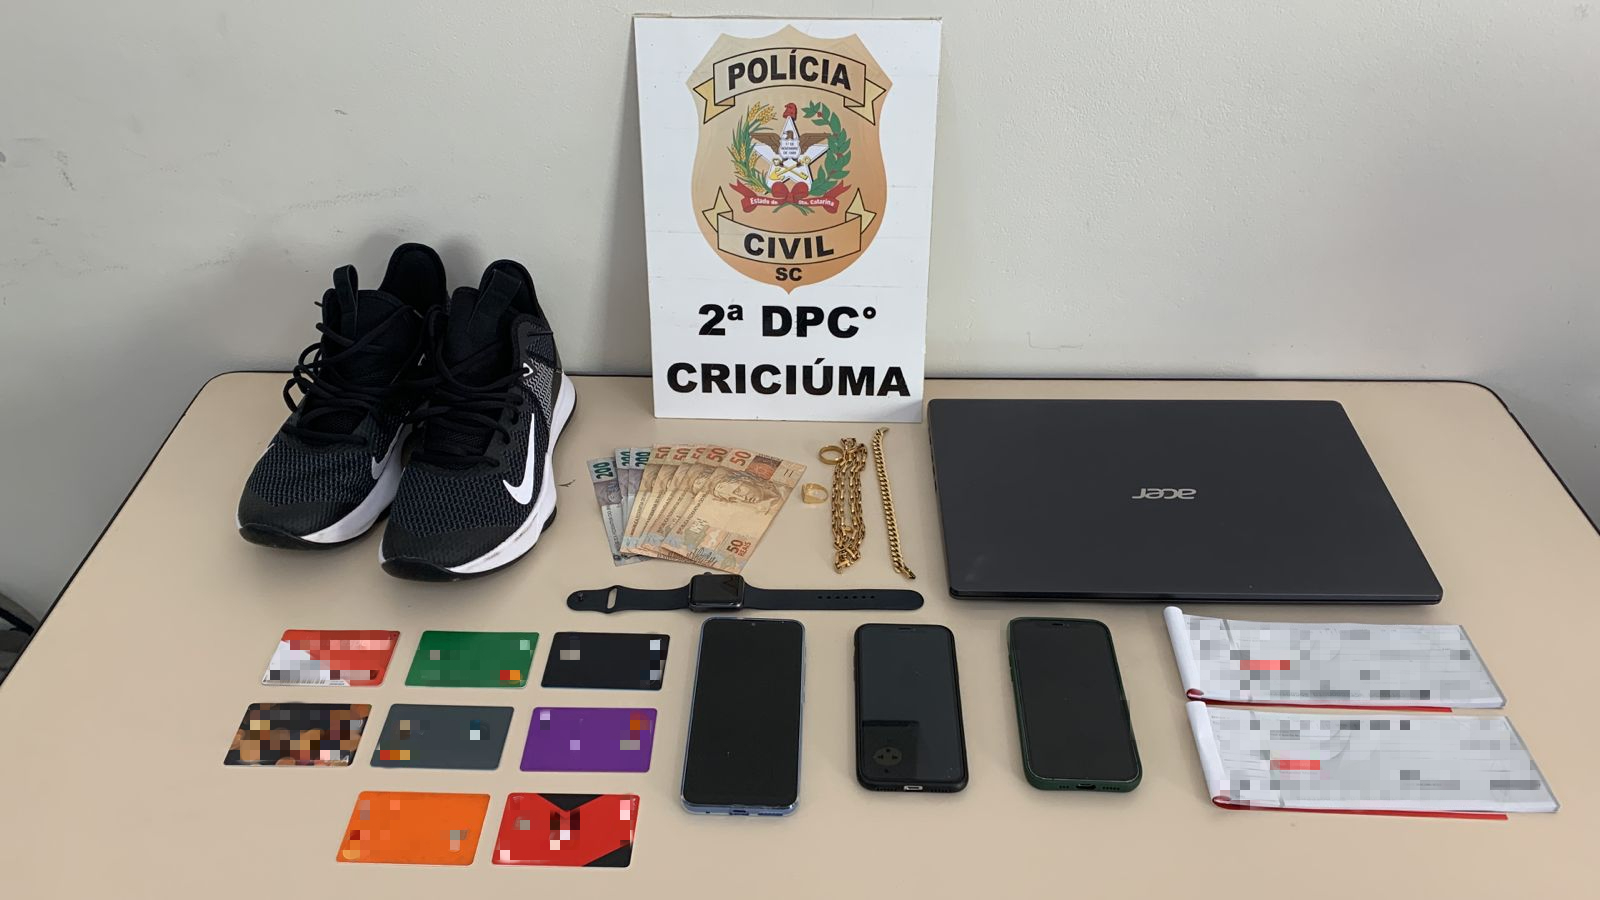 Polícia Civil efetua prisão de homem suspeito de praticar pelo menos 22 crimes de estelionato em Criciúma